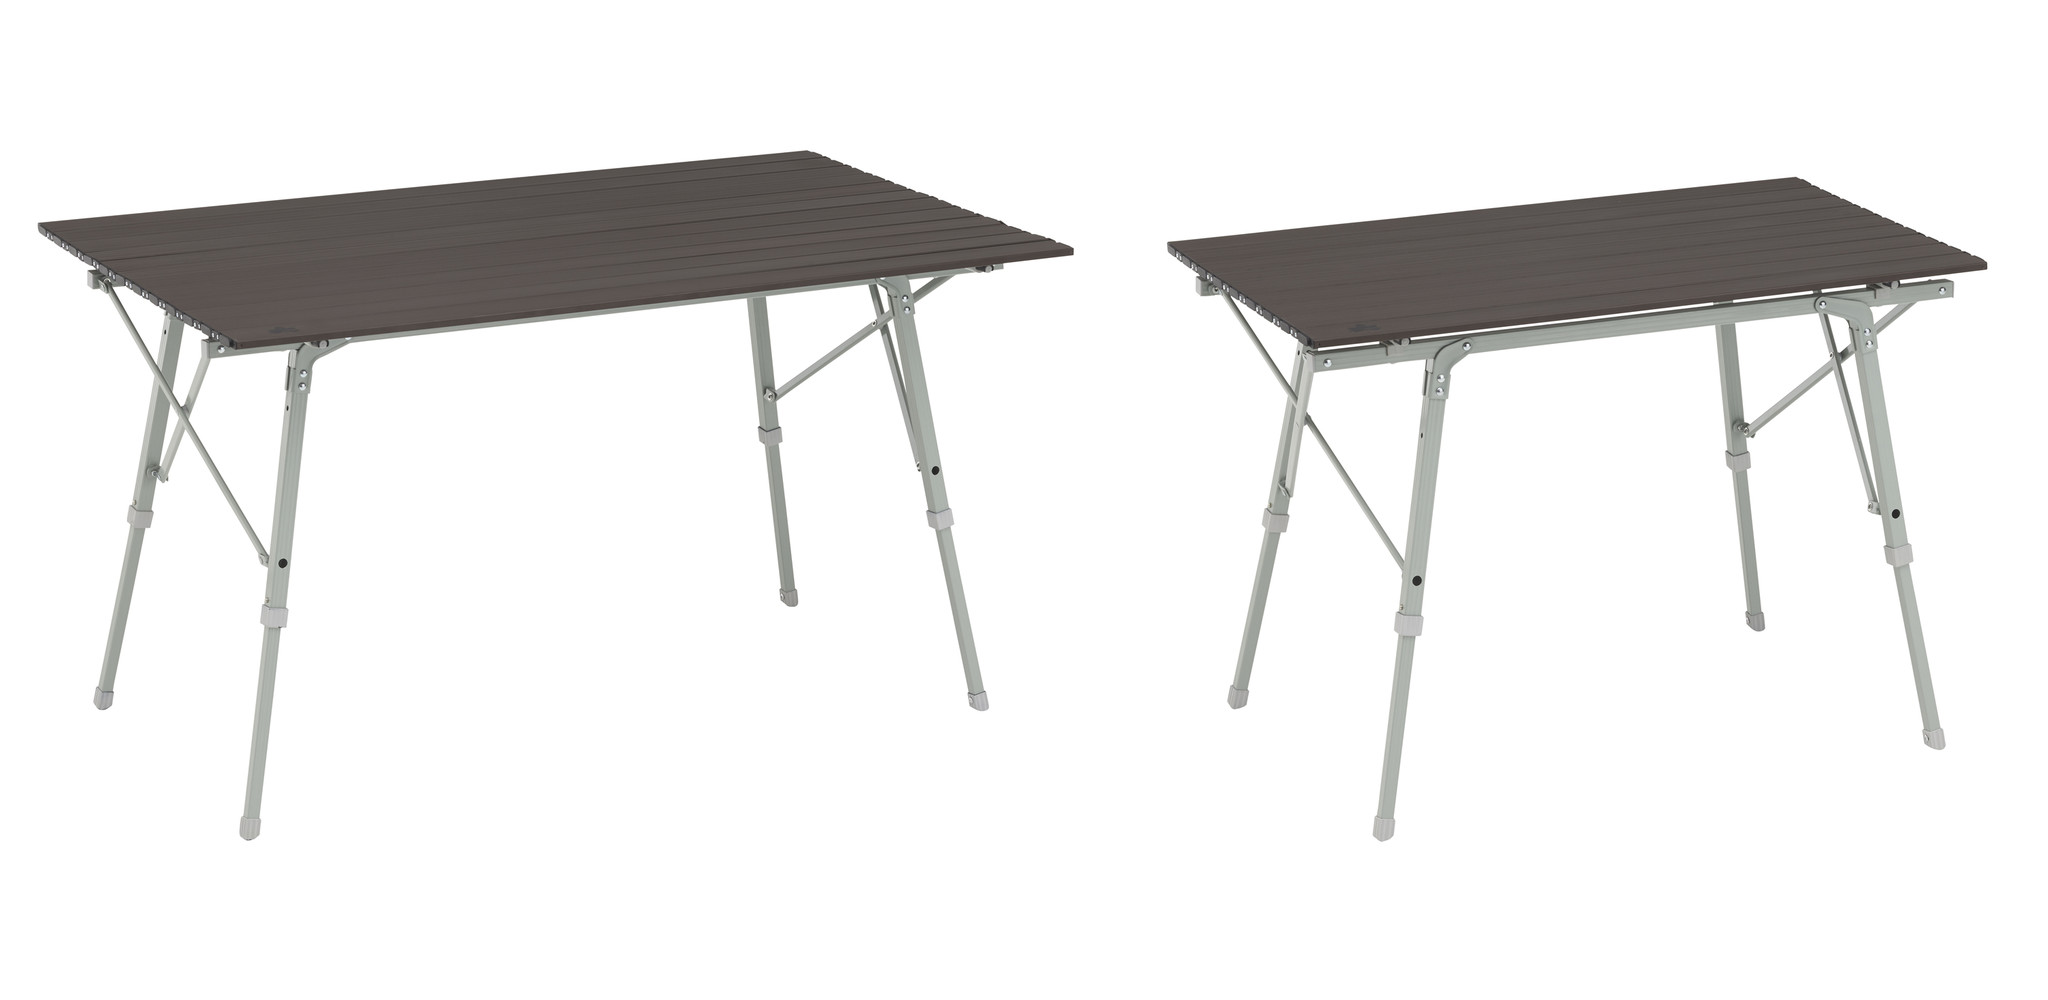 脚部が自動で開く！組立て簡単な折りたたみ式テーブル「LOGOS Life オートレッグテーブル」シリーズ新発売